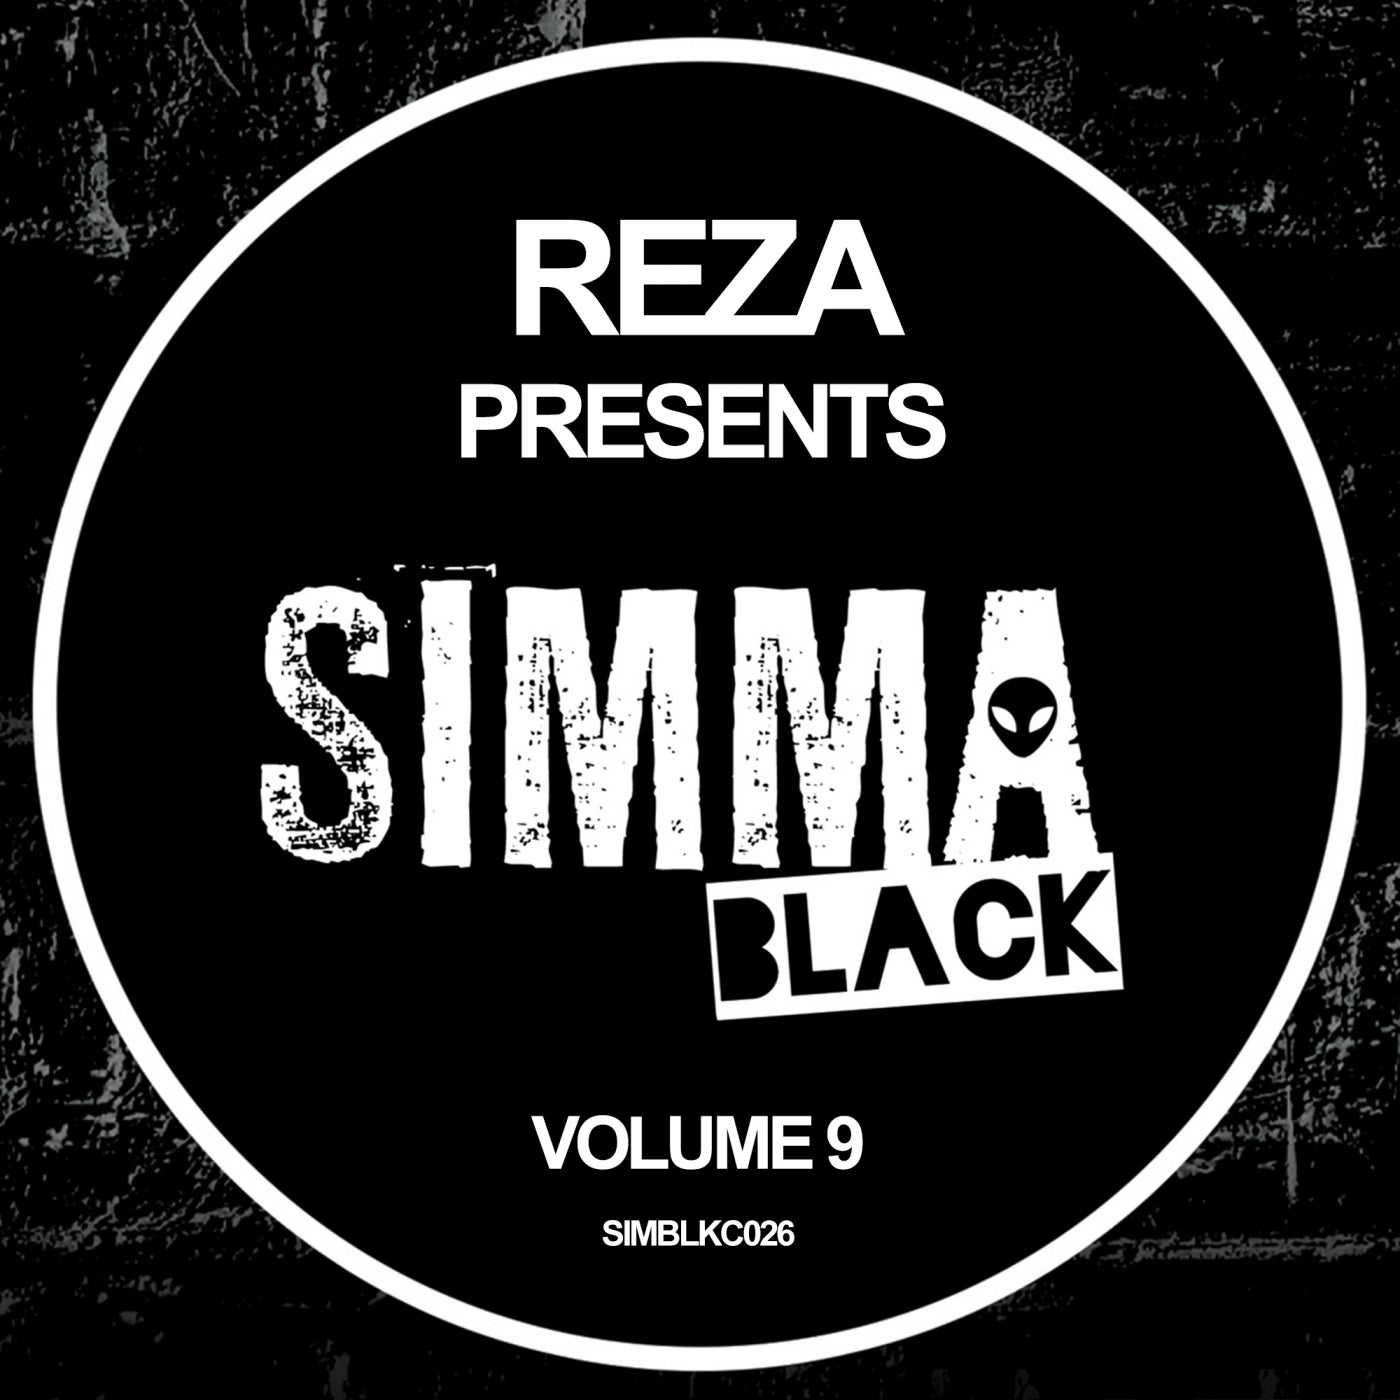 VA – Reza presents Simma Black, Vol. 9 [SIMBLKC026]